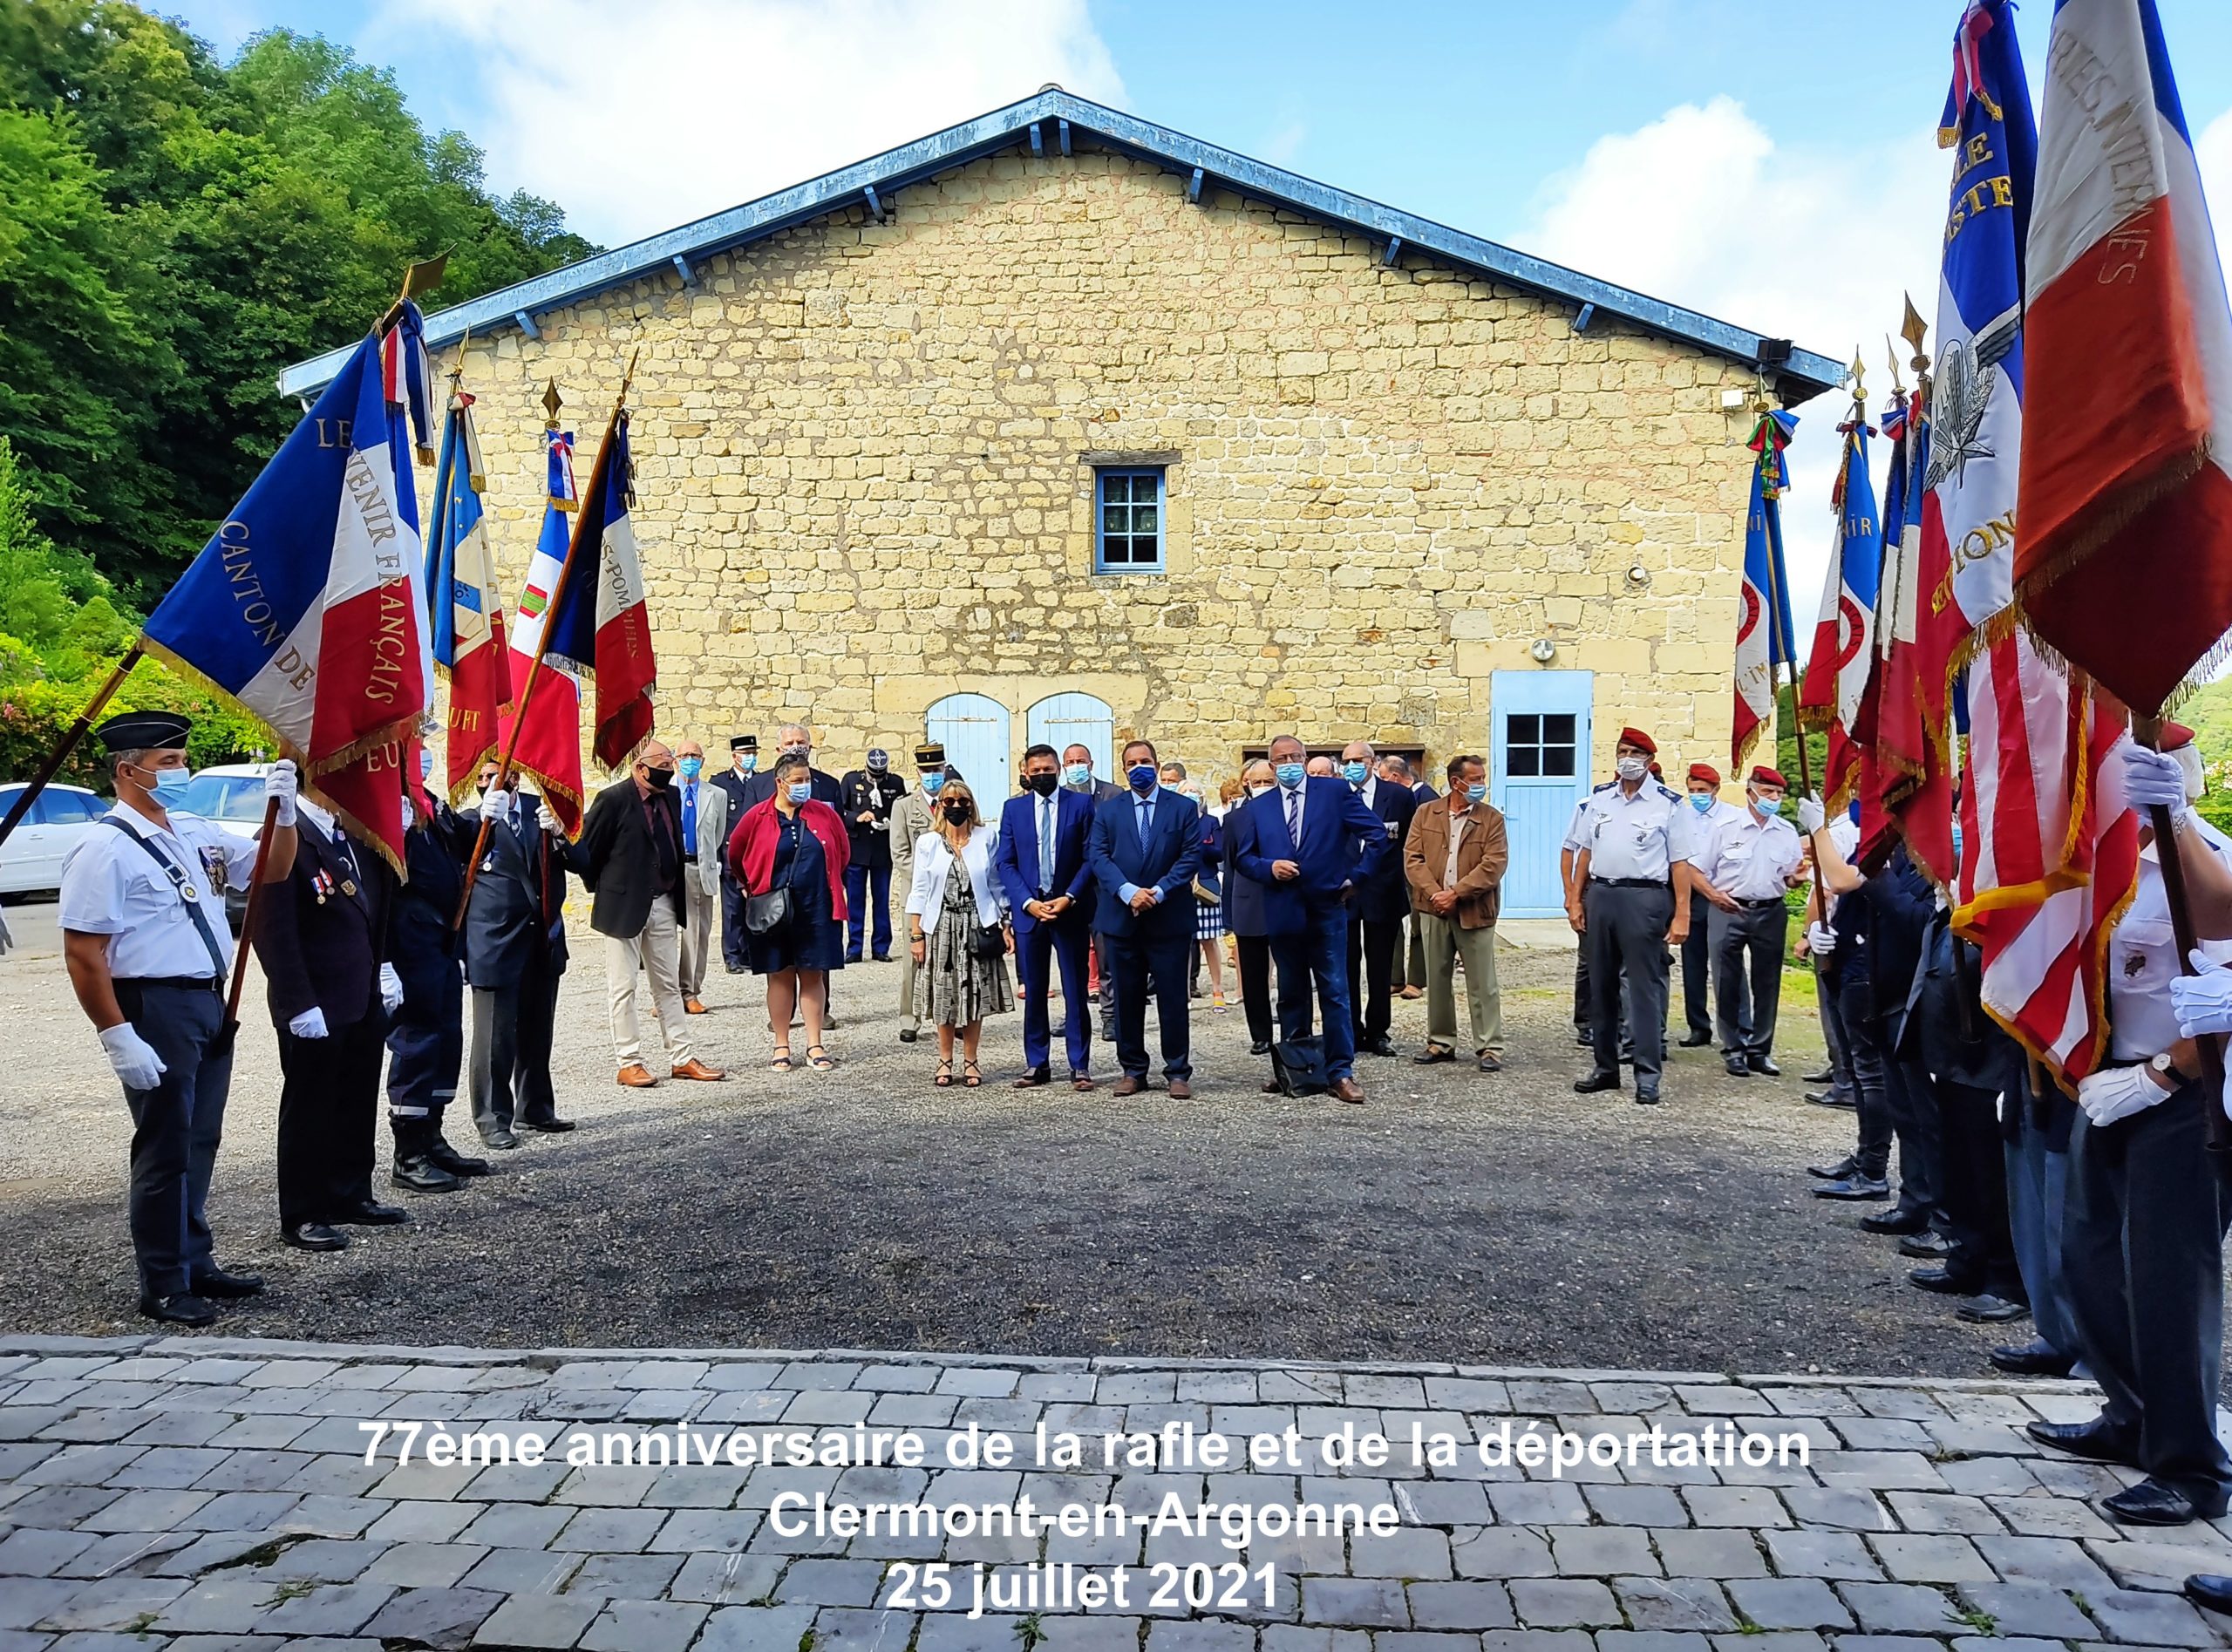 You are currently viewing 77ème anniversaire de la rafle et de la déportation Clermontoise – 25 juillet 2021